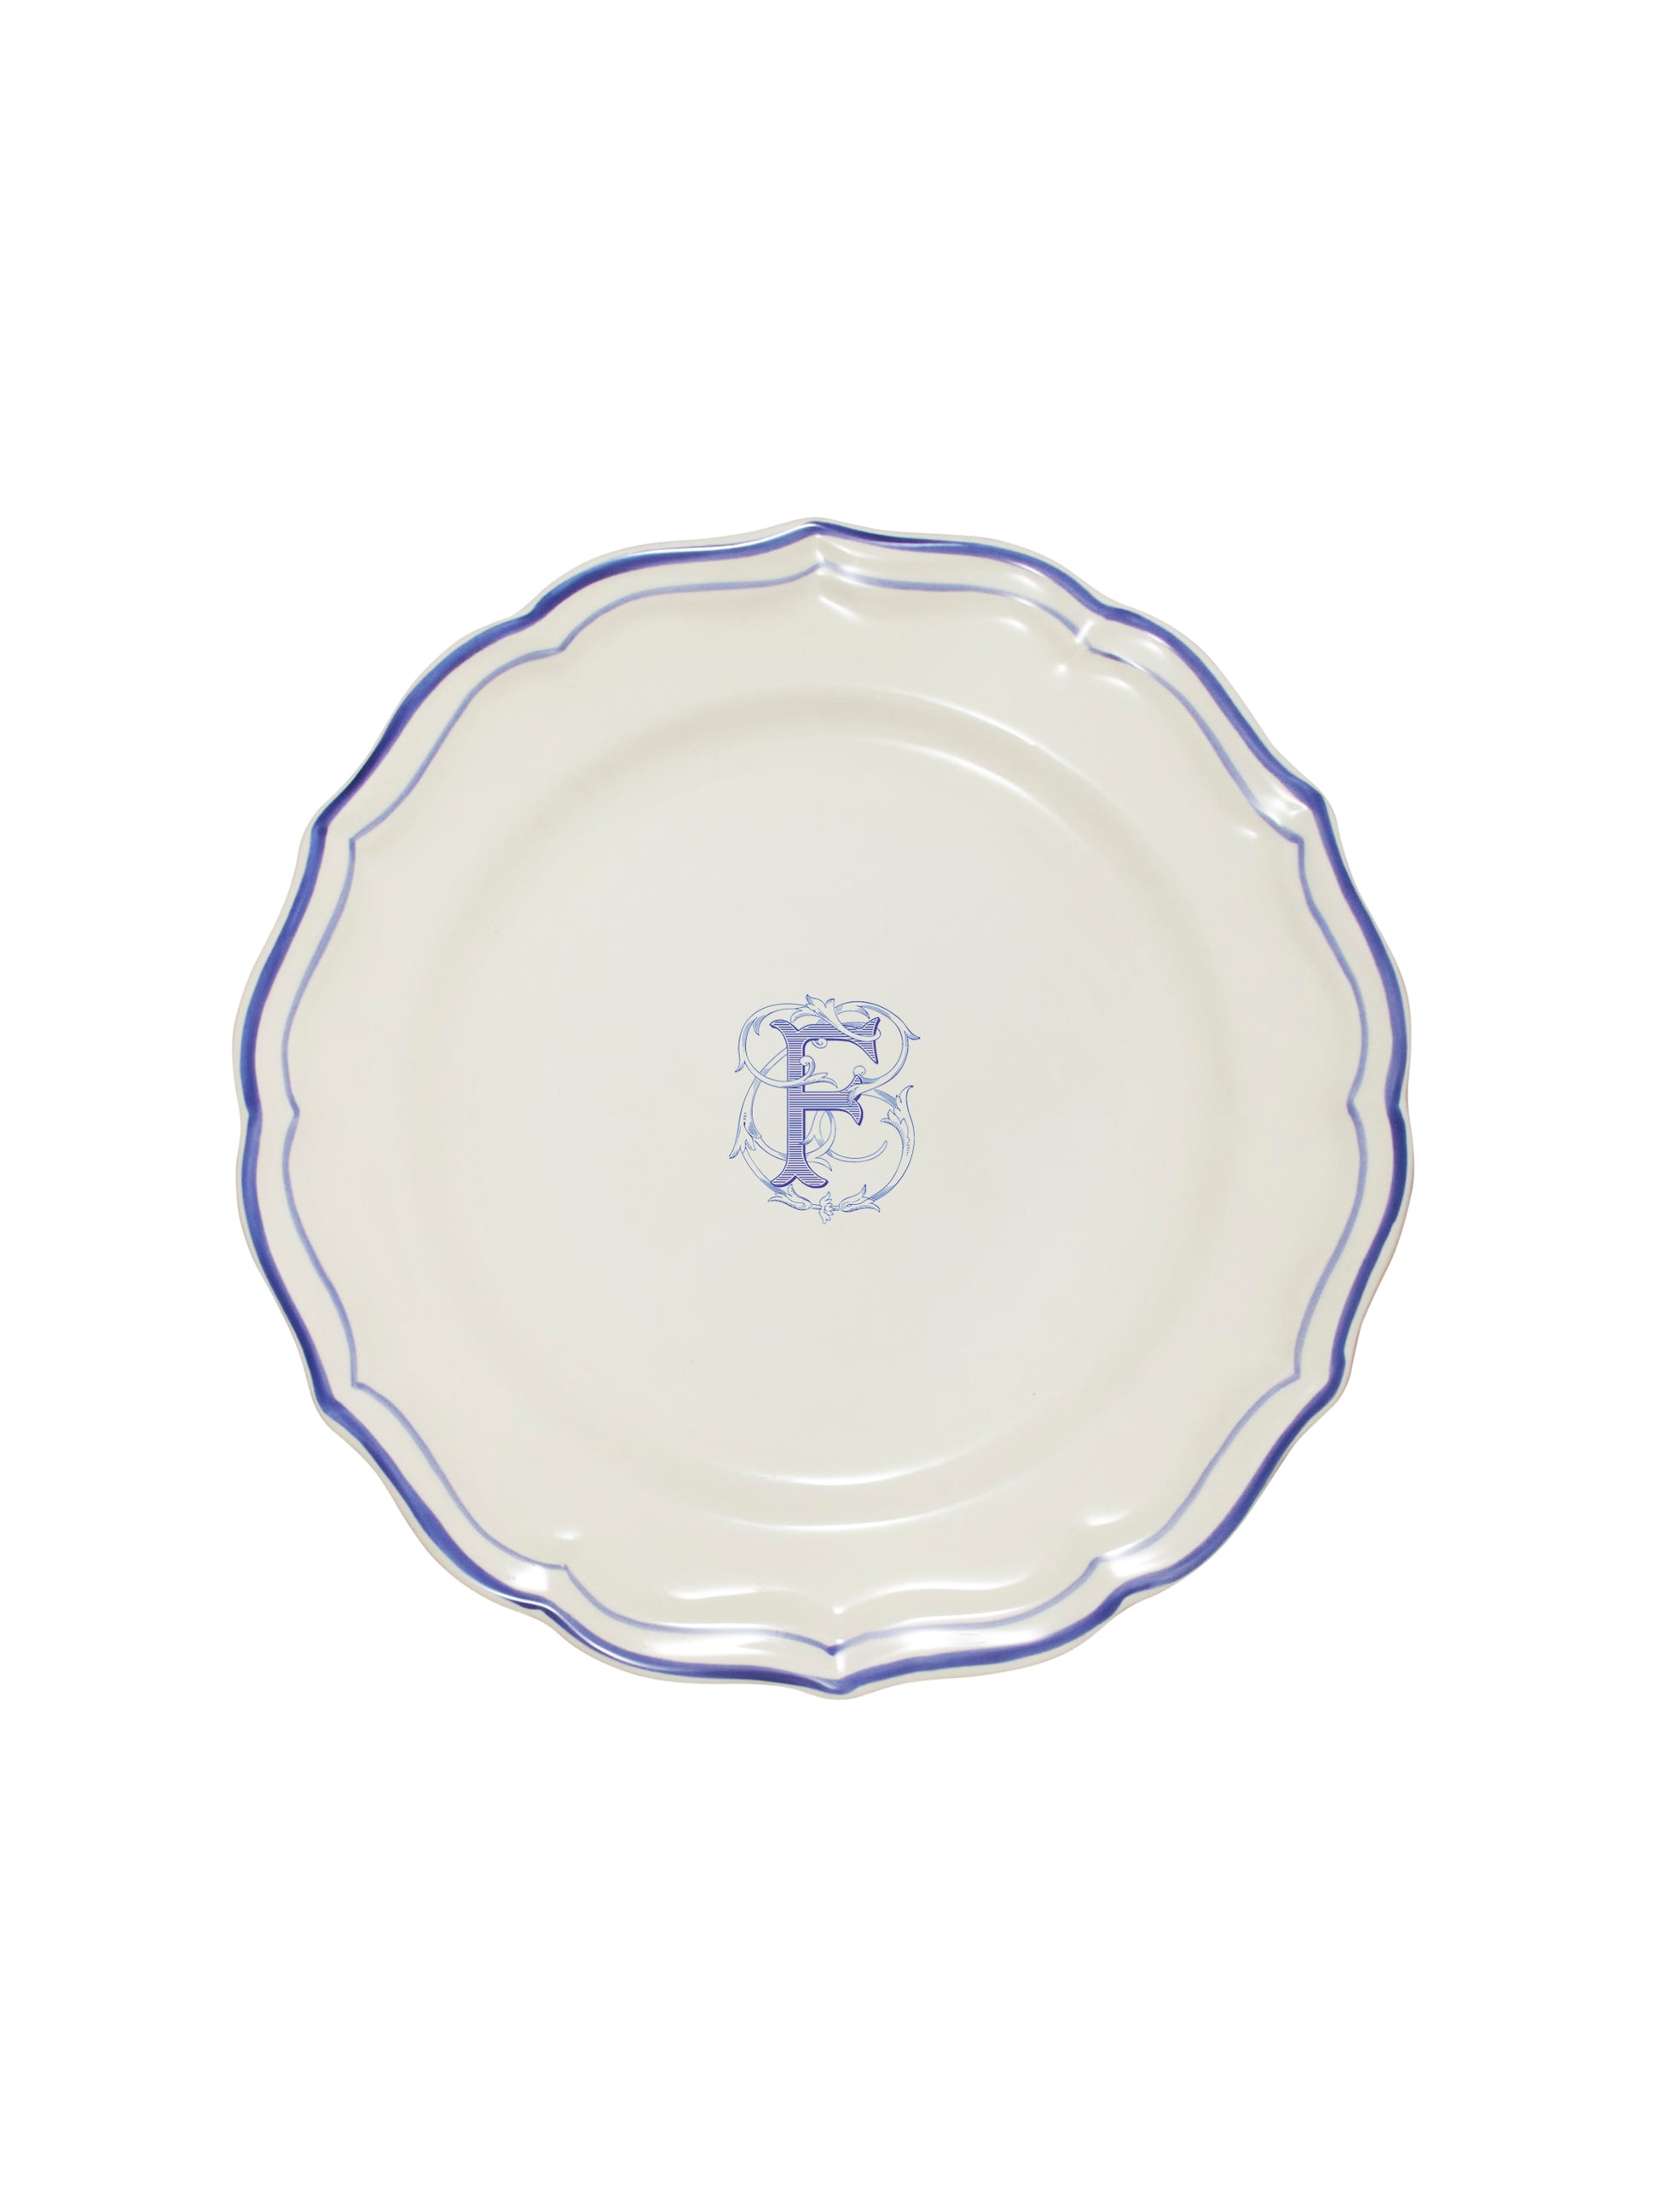 Gien Filet Bleu Dinner Plate F Weston Table